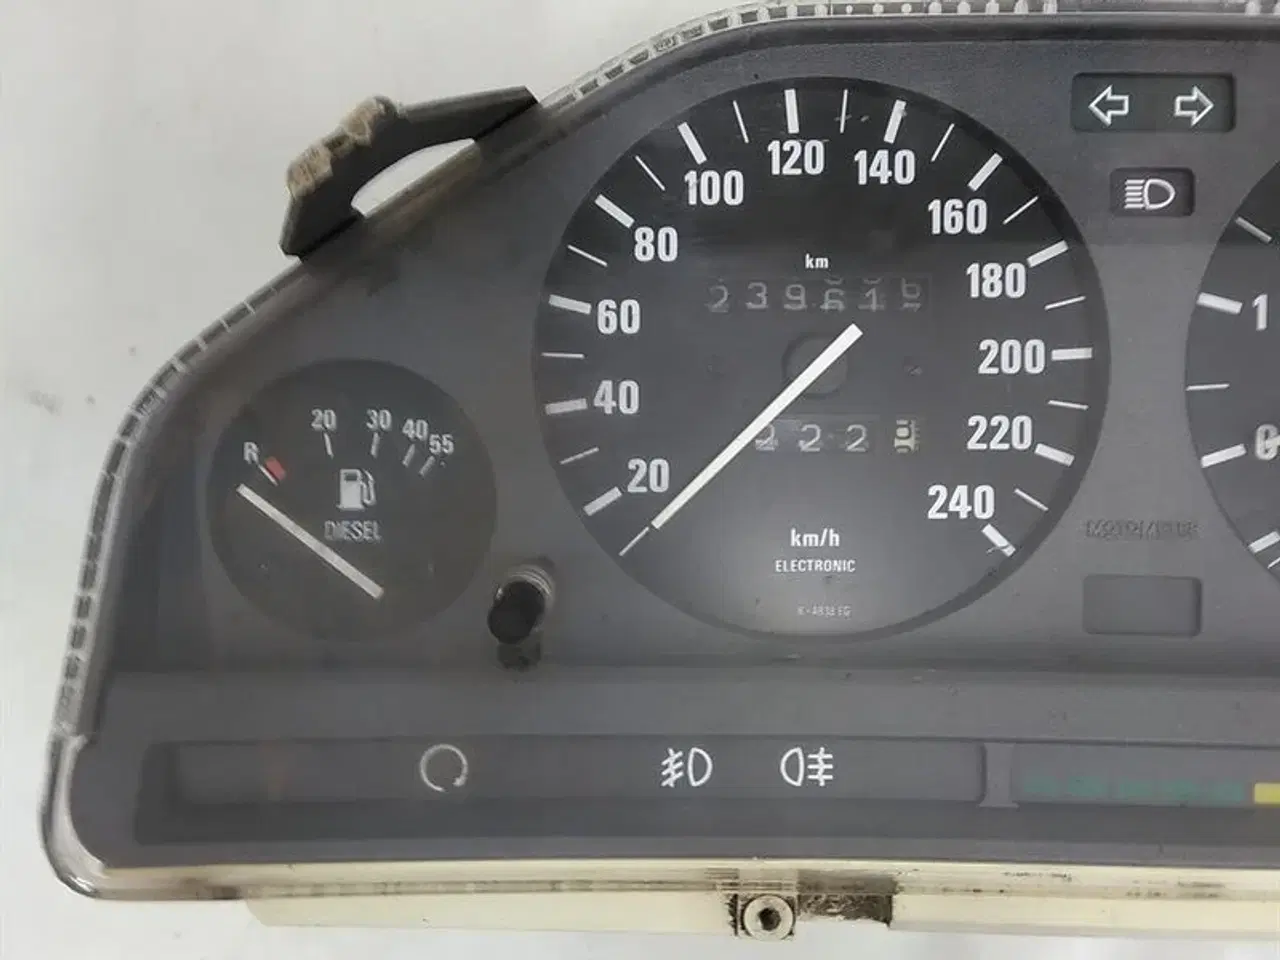 Billede 2 - Instrumentkombi MotoMeter Brugt 239617 km C51422 BMW E30